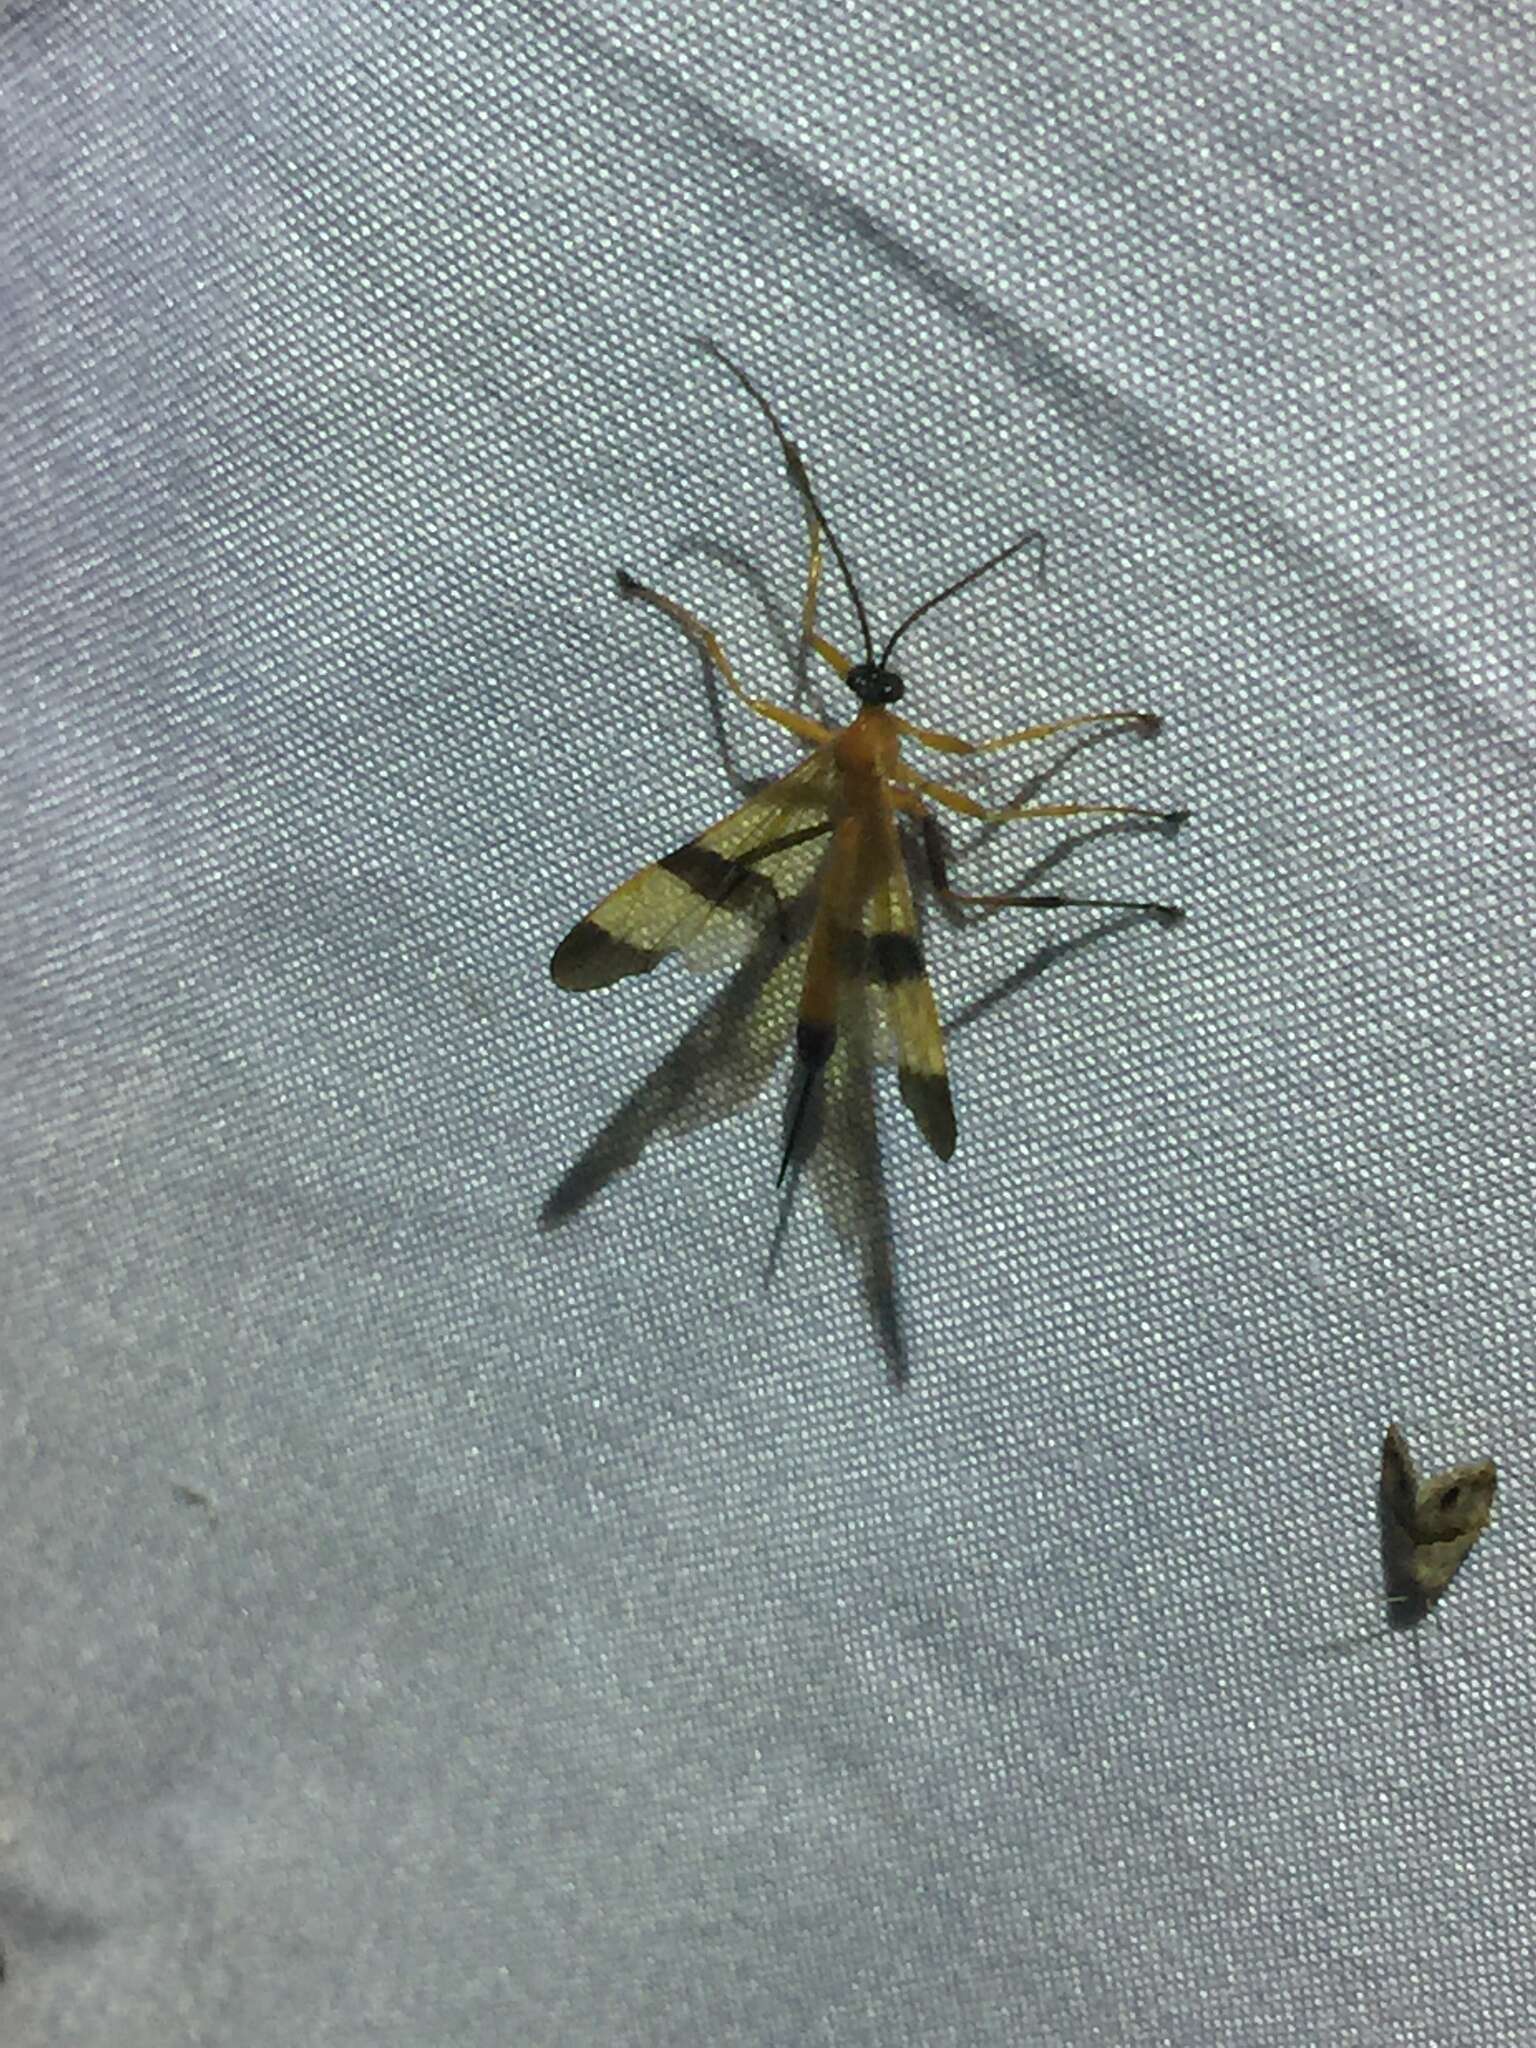 Image of Acrotaphus tibialis (Cameron 1886)